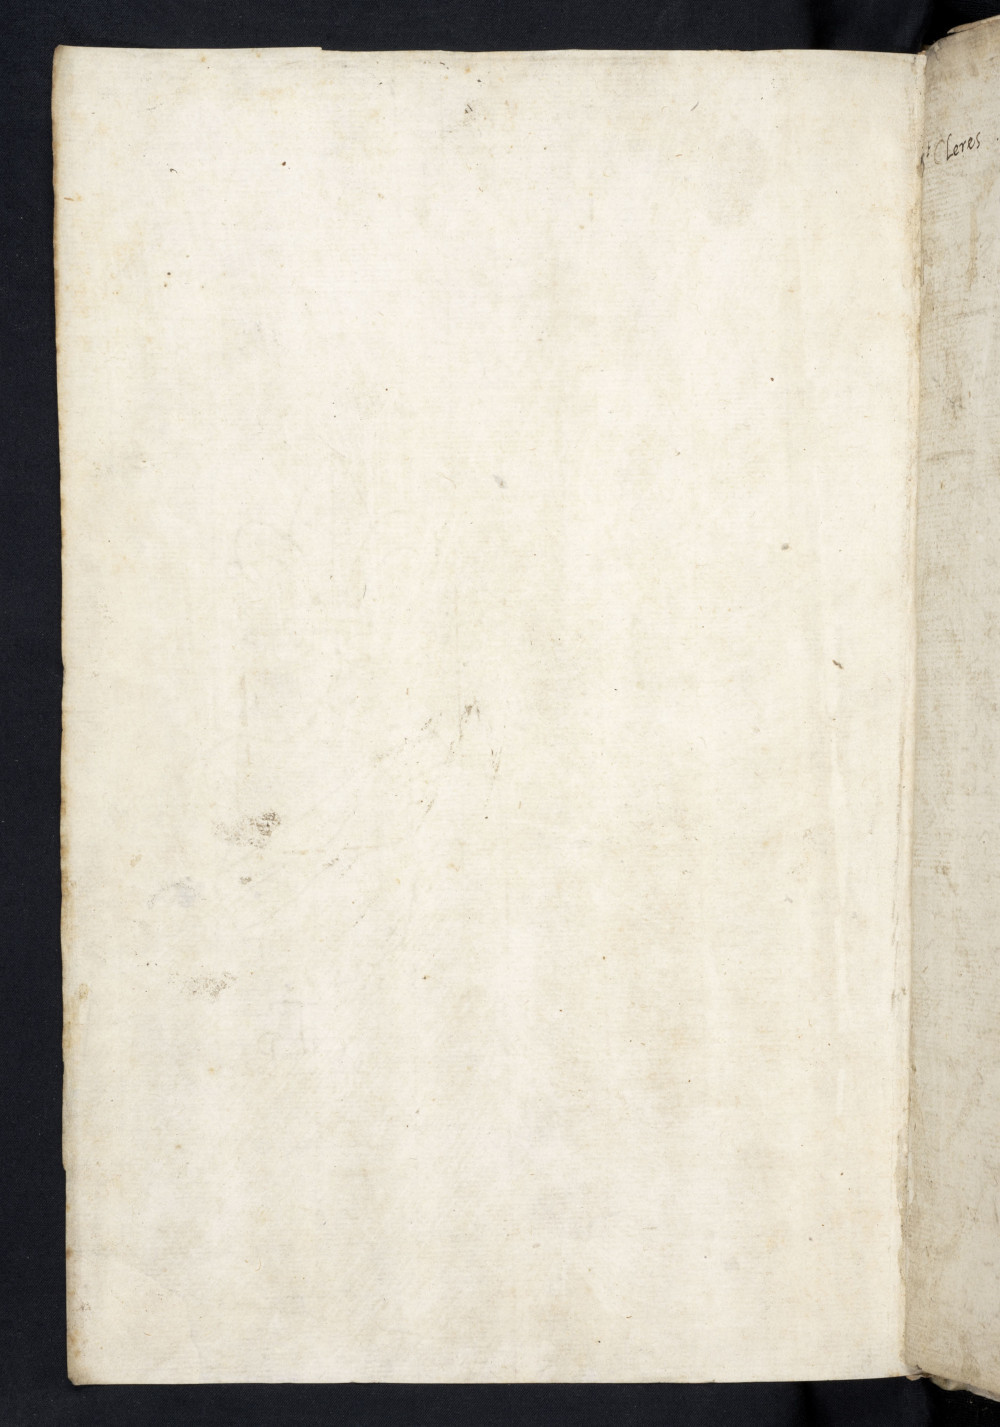 Folio iii v